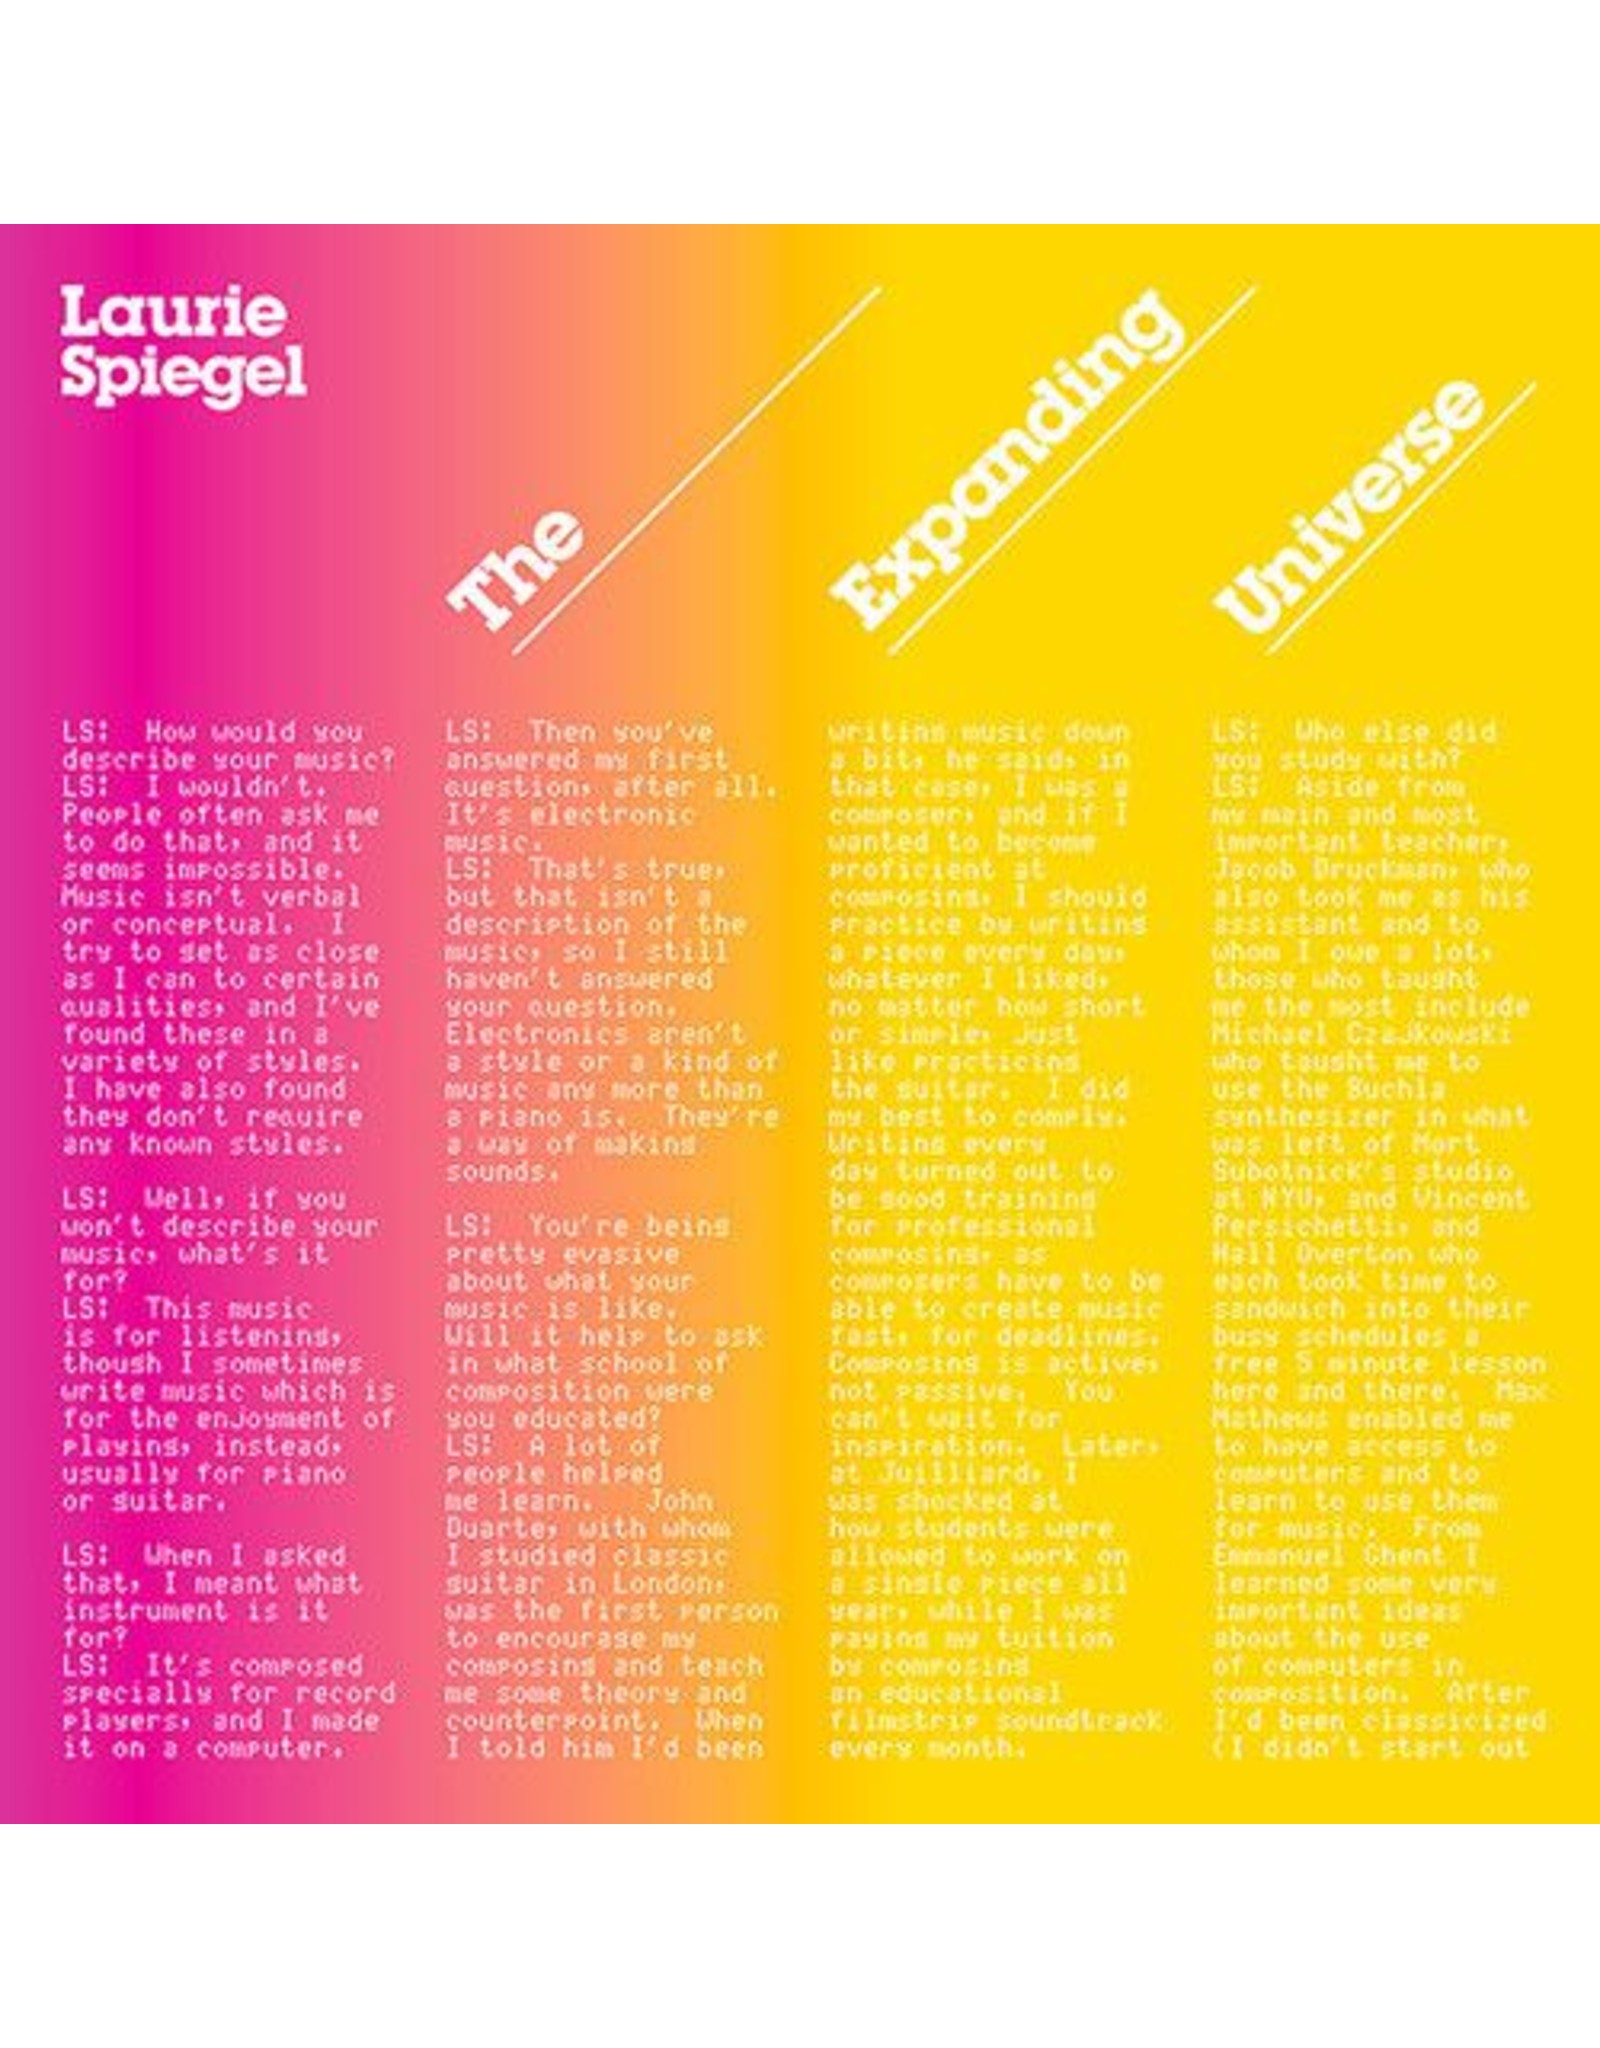 Spiegel, Laurie: The Expanding Universe (3LP) LP